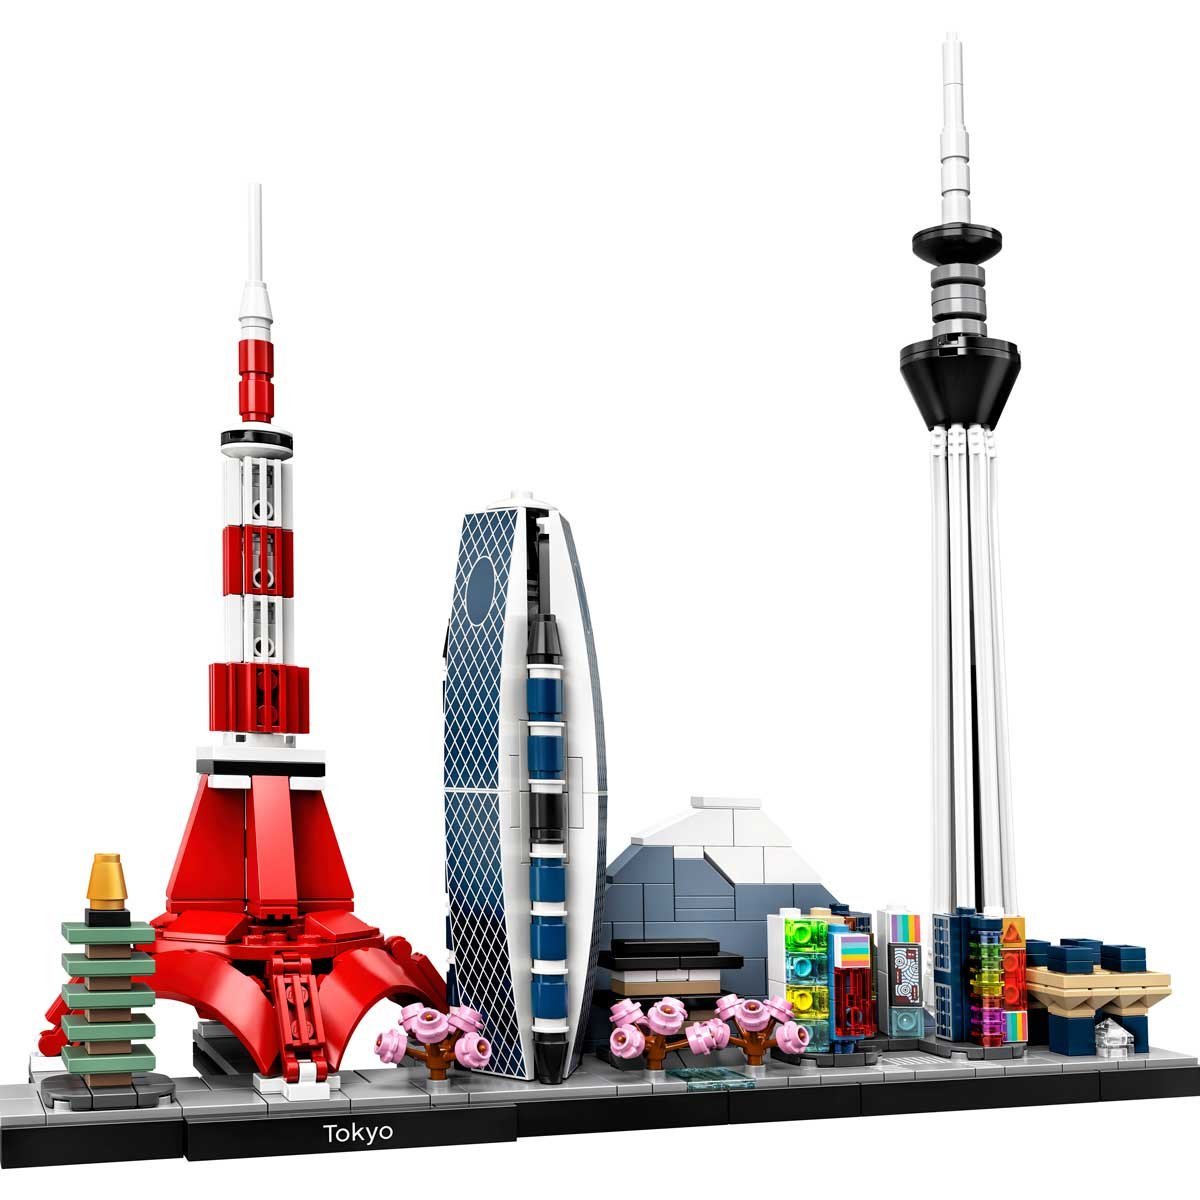 Tokio Lego Architecture